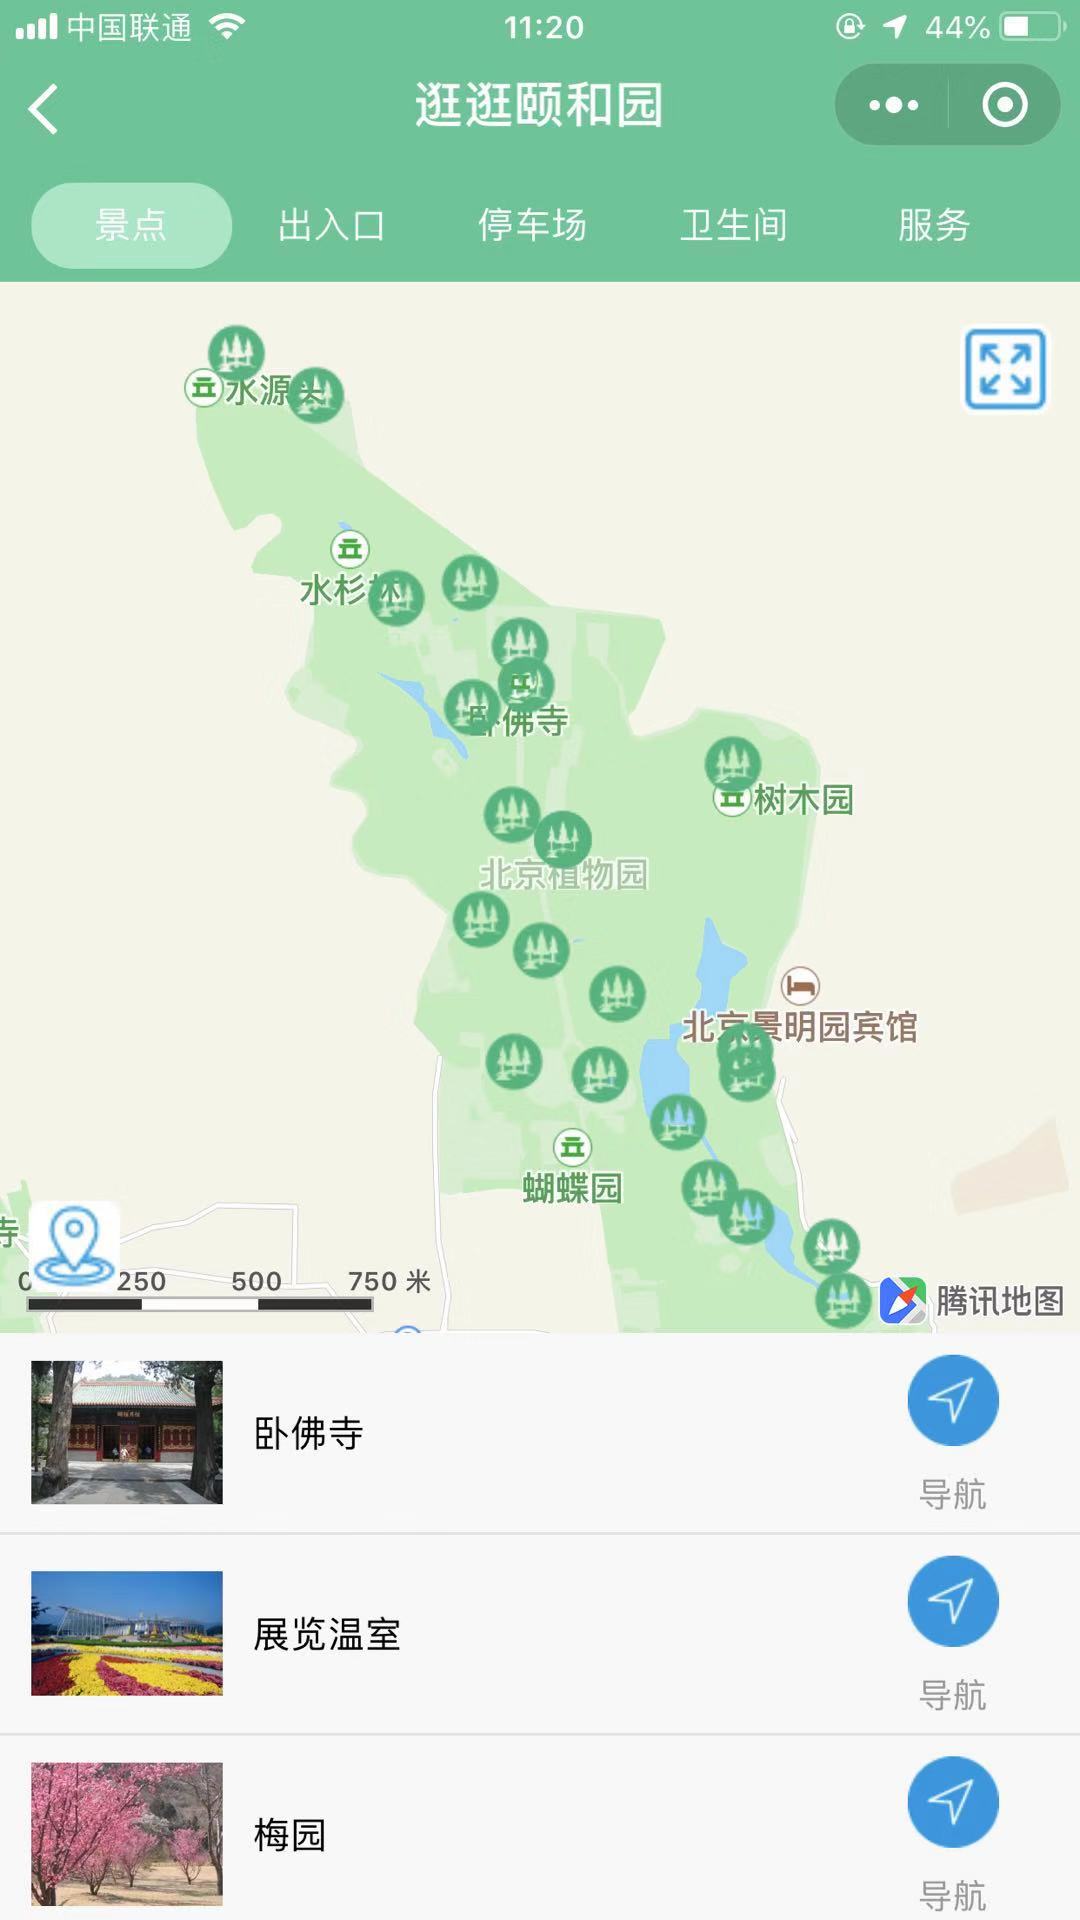 北京植物园到了那_北京植物园到了那小程序_北京植物园到了那微信小程序